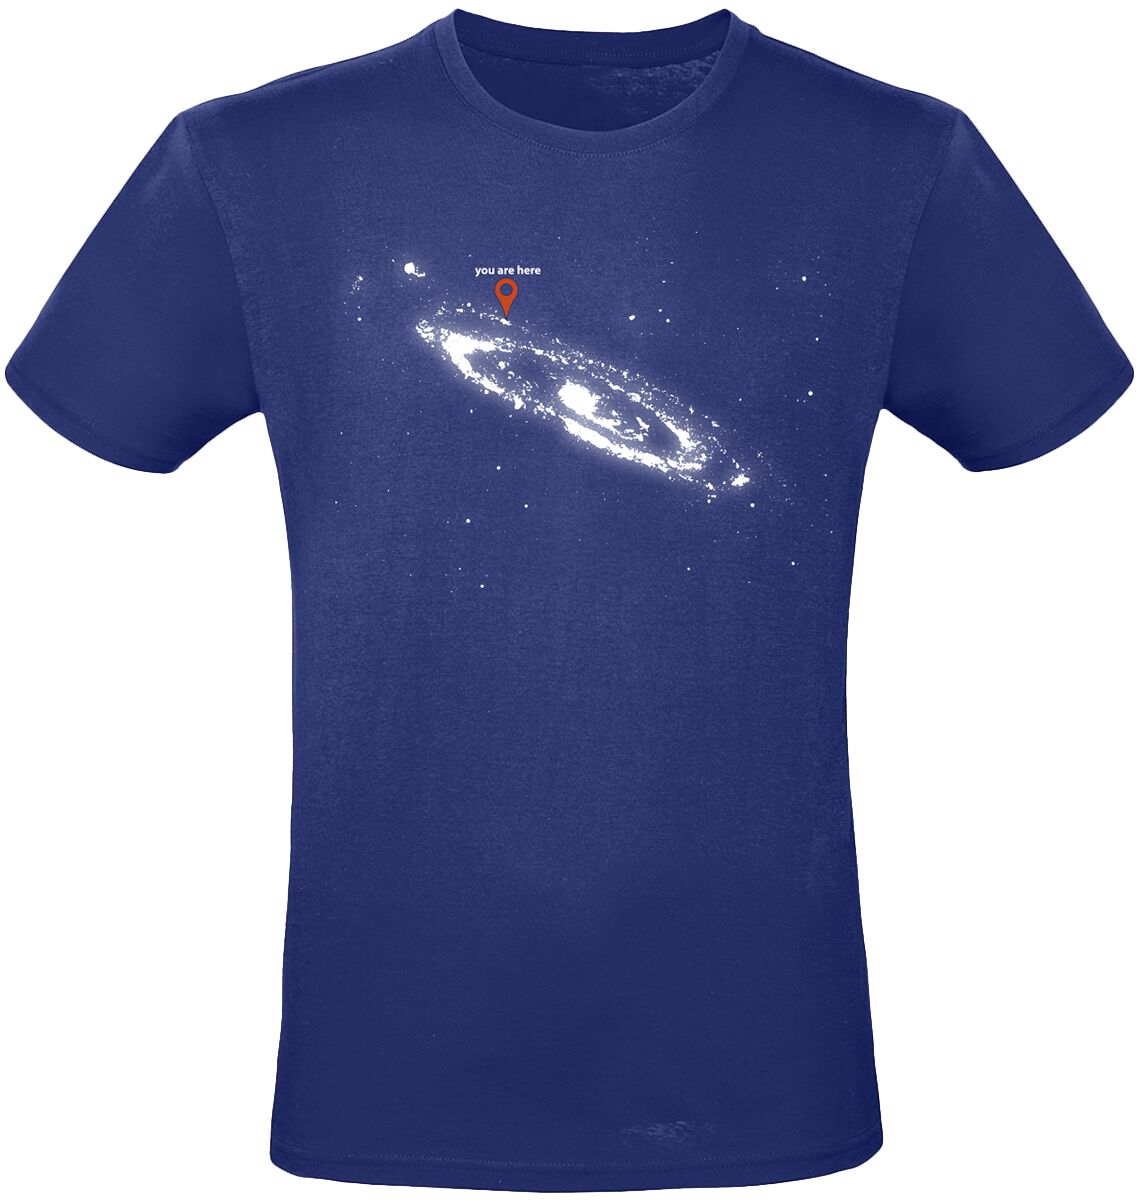 Funshirt T-Shirt - You Are Here - M bis 3XL - für Männer - Größe M - dunkelblau